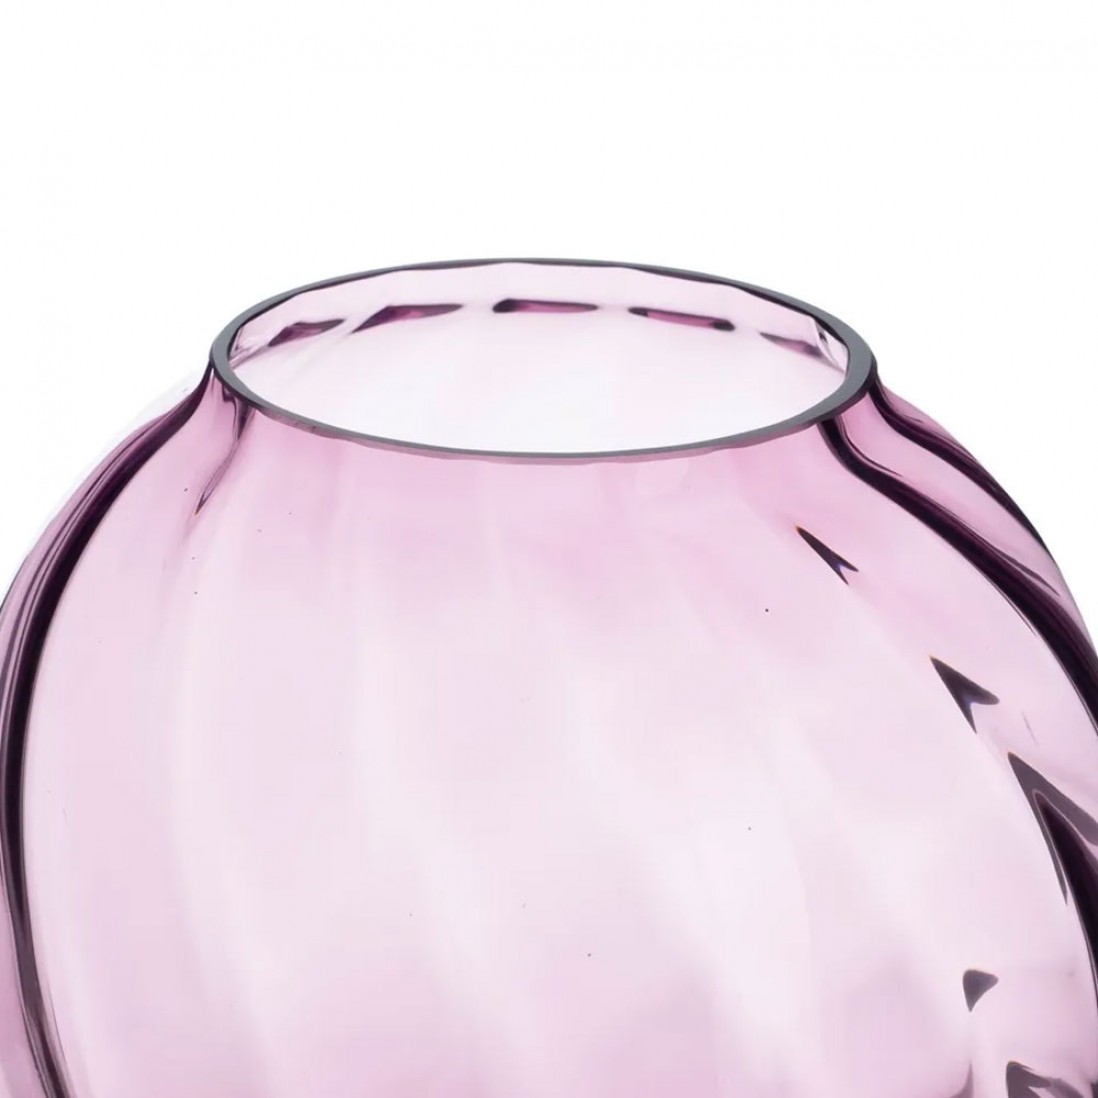 Glass Jar 020